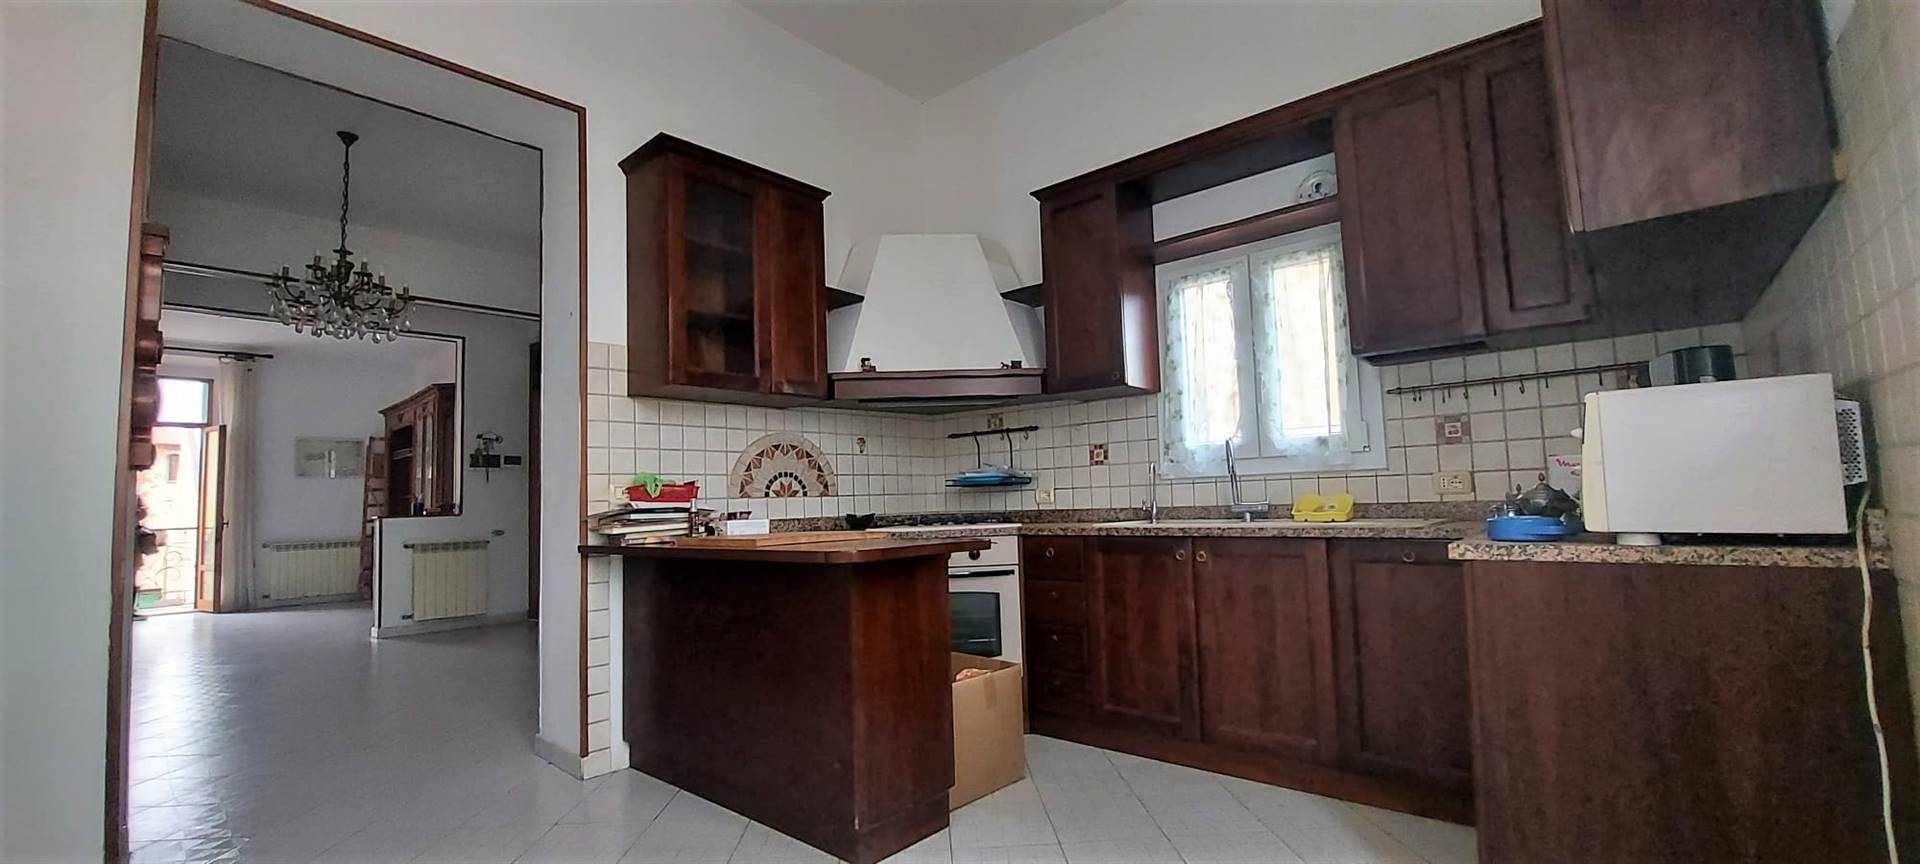 Appartamento in vendita a Piombino, 5 locali, zona Località: CENTRO, prezzo € 150.000 | PortaleAgenzieImmobiliari.it